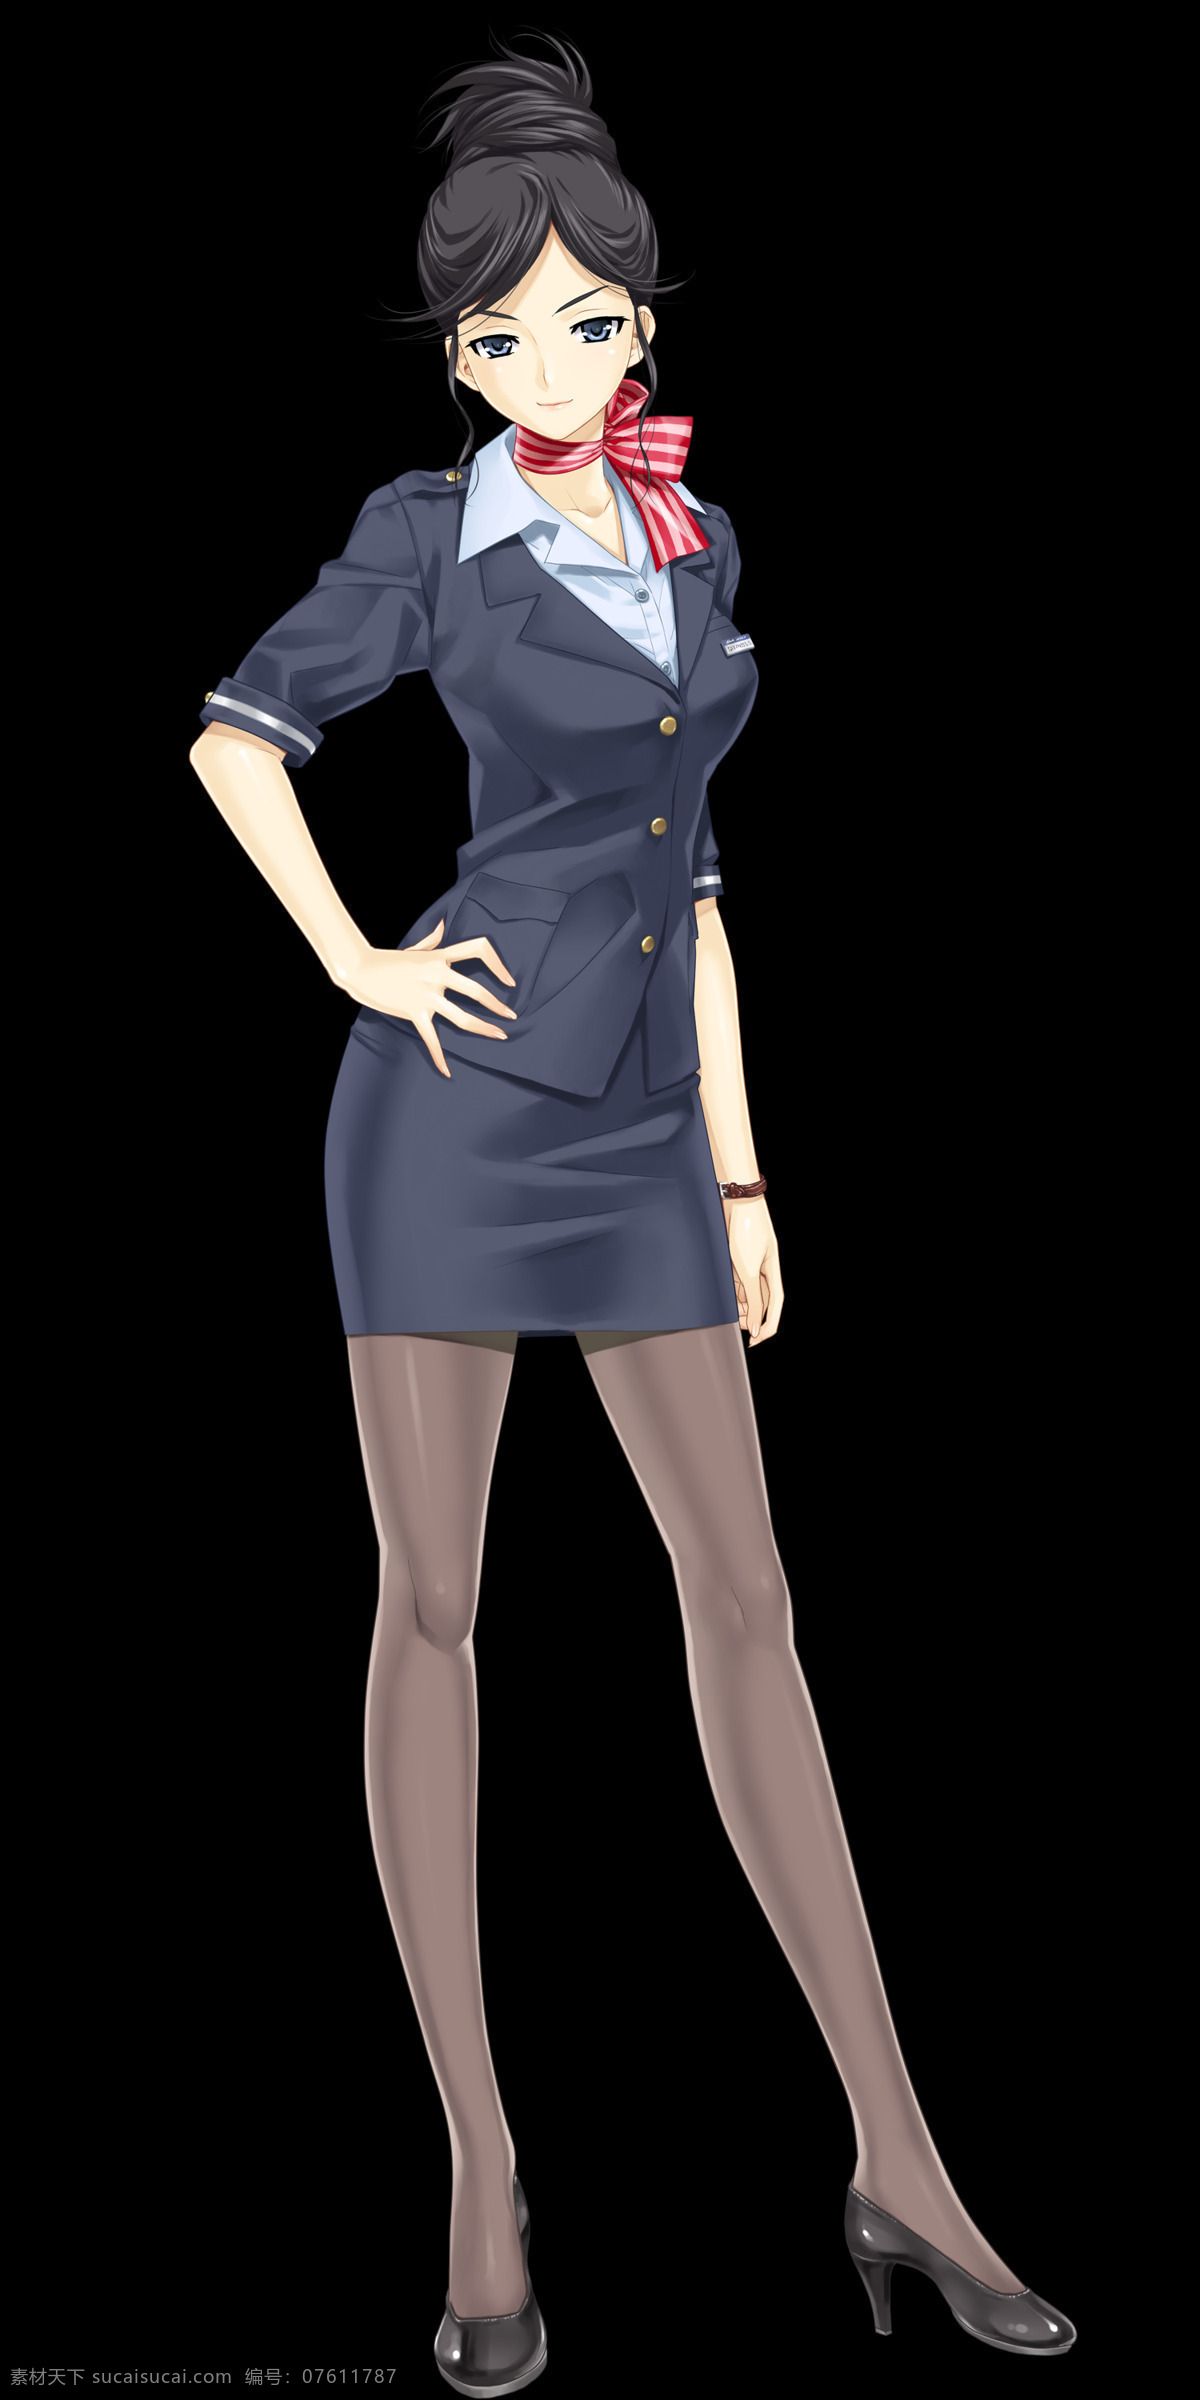 美女空姐 空姐制服 短裙 黑丝 皮鞋 长腿 性感 美女 围巾 高挑 动漫人物 动漫动画